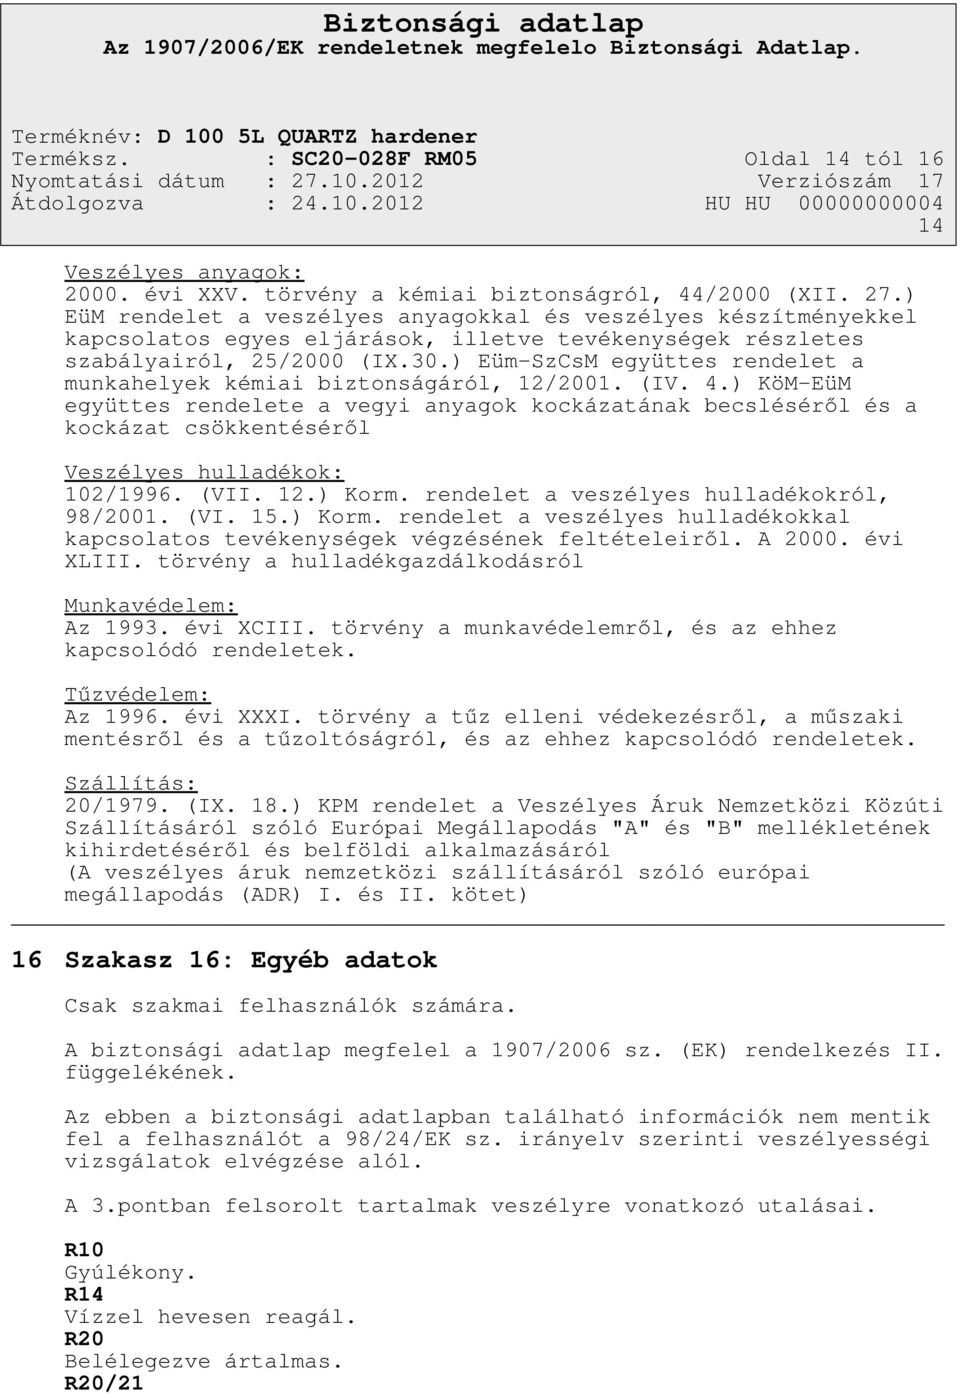 ) Eüm-SzCsM együttes rendelet a munkahelyek kémiai biztonságáról, 12/2001. (IV. 4.